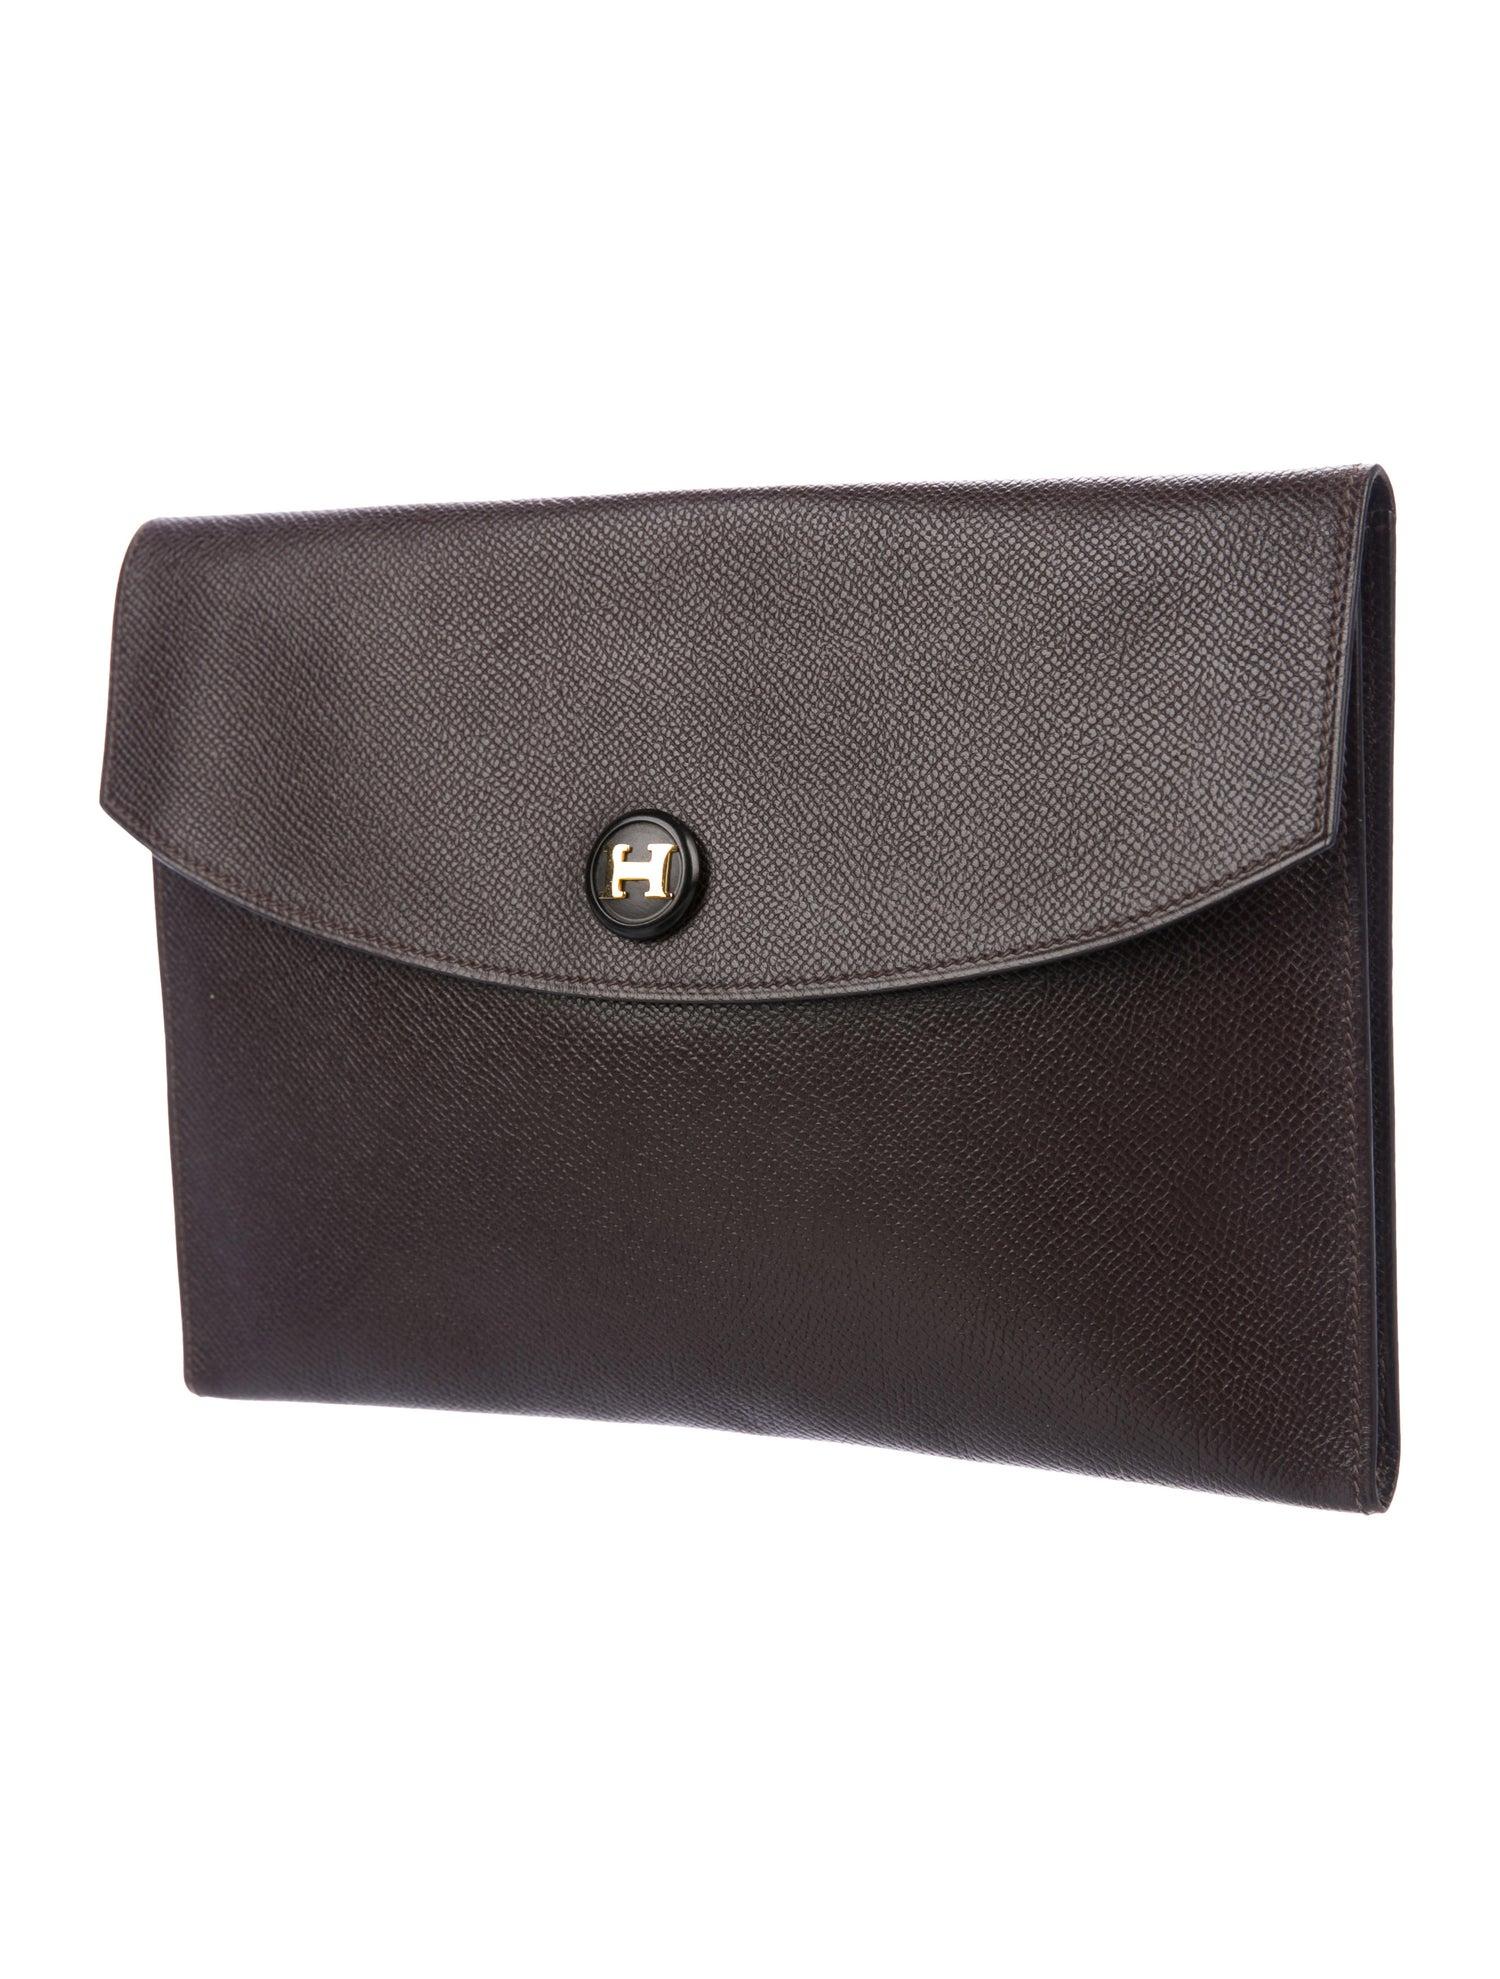 Black Hermes Dark Brown Leather Gold 'H' Logo Button Envelope Evening Clutch Bag